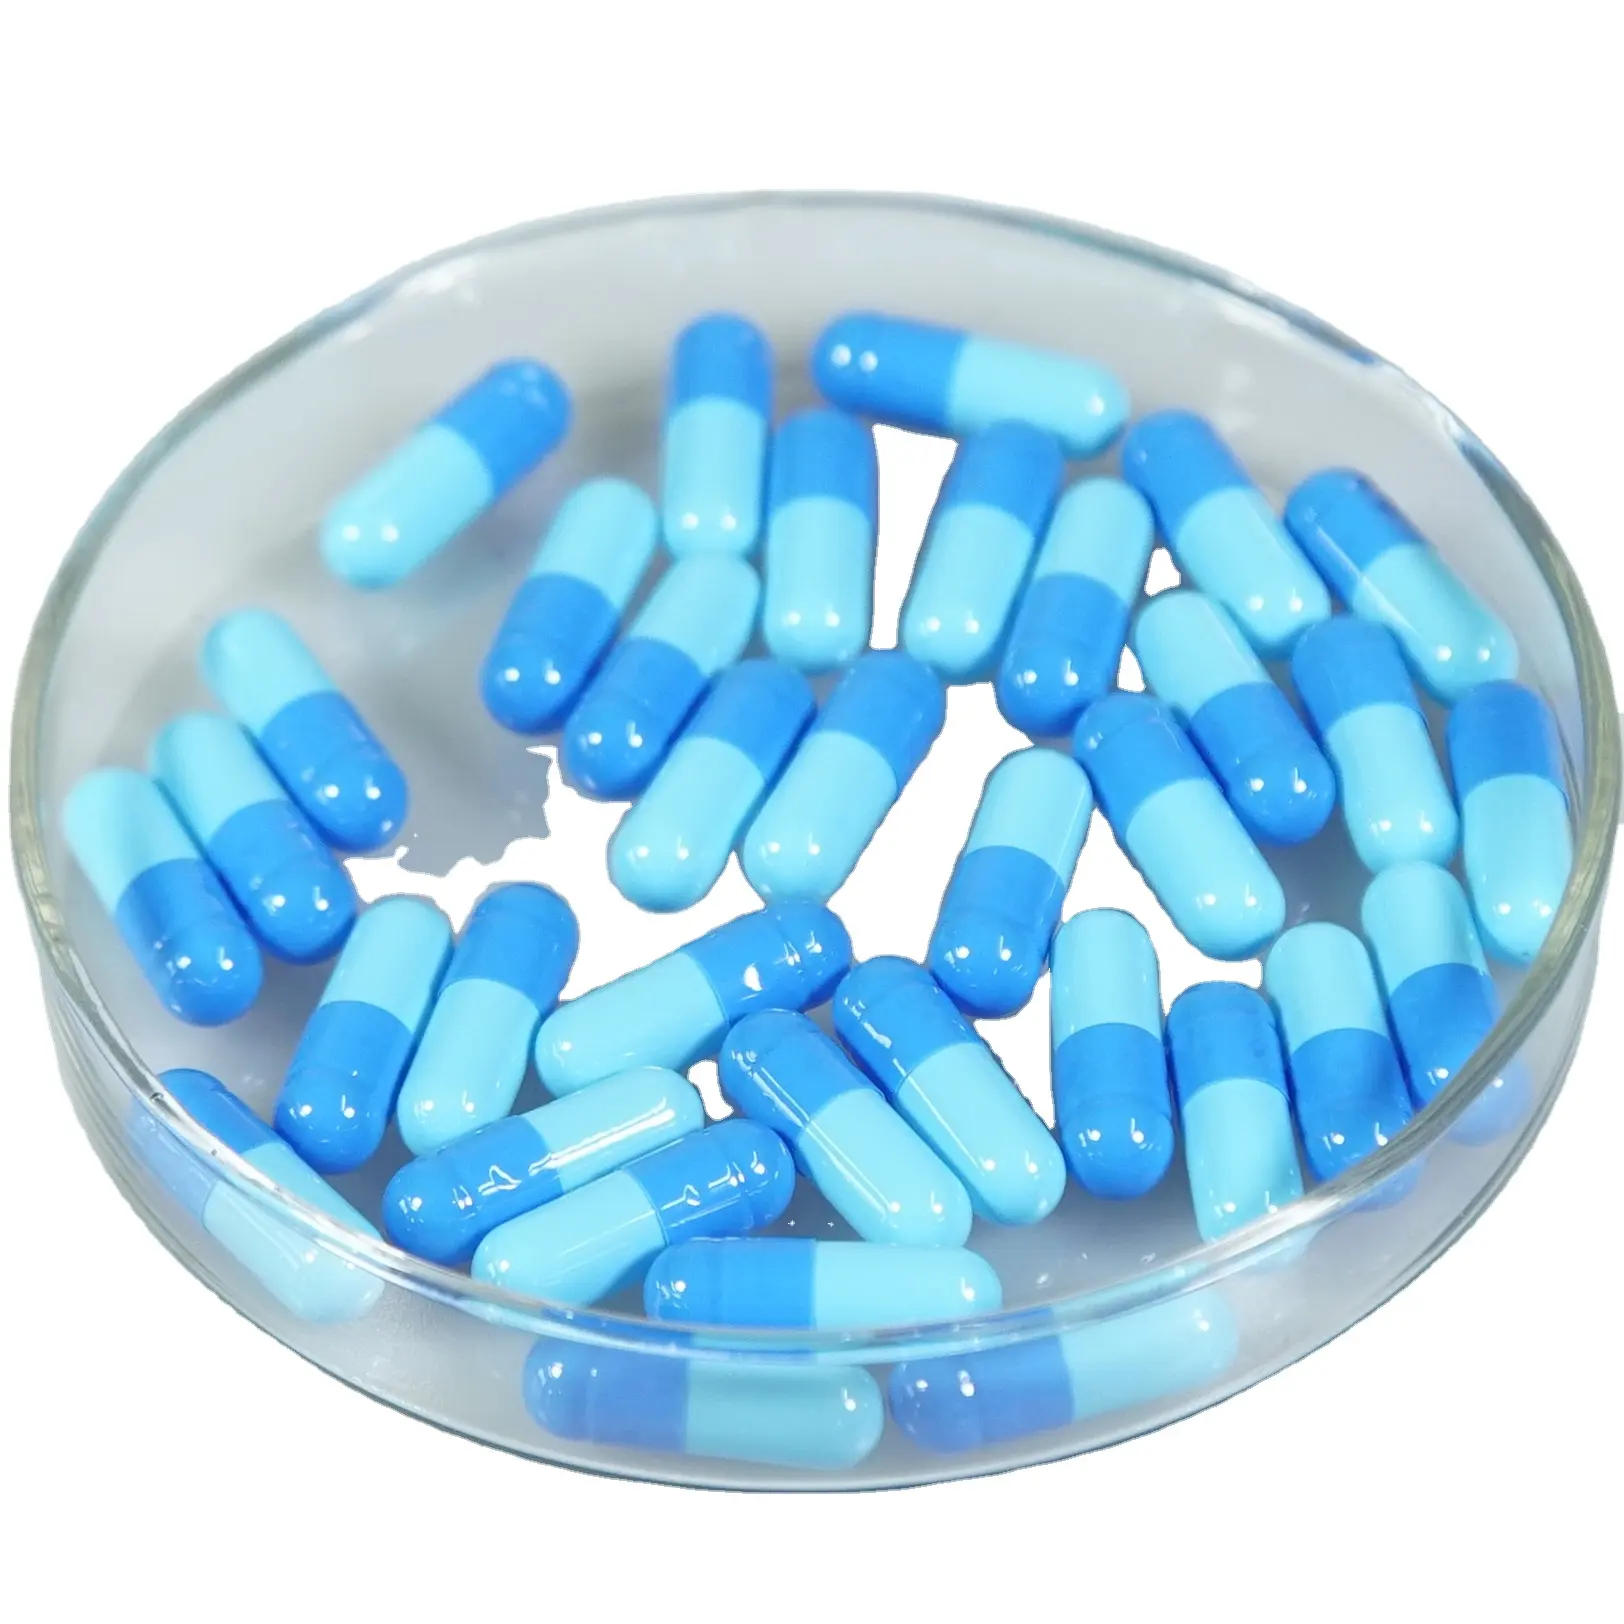 Capsules rondes de gélatine dure vide personnalisée pharmaceutique JP 1000 pièces par sac taille 0 00 capsules